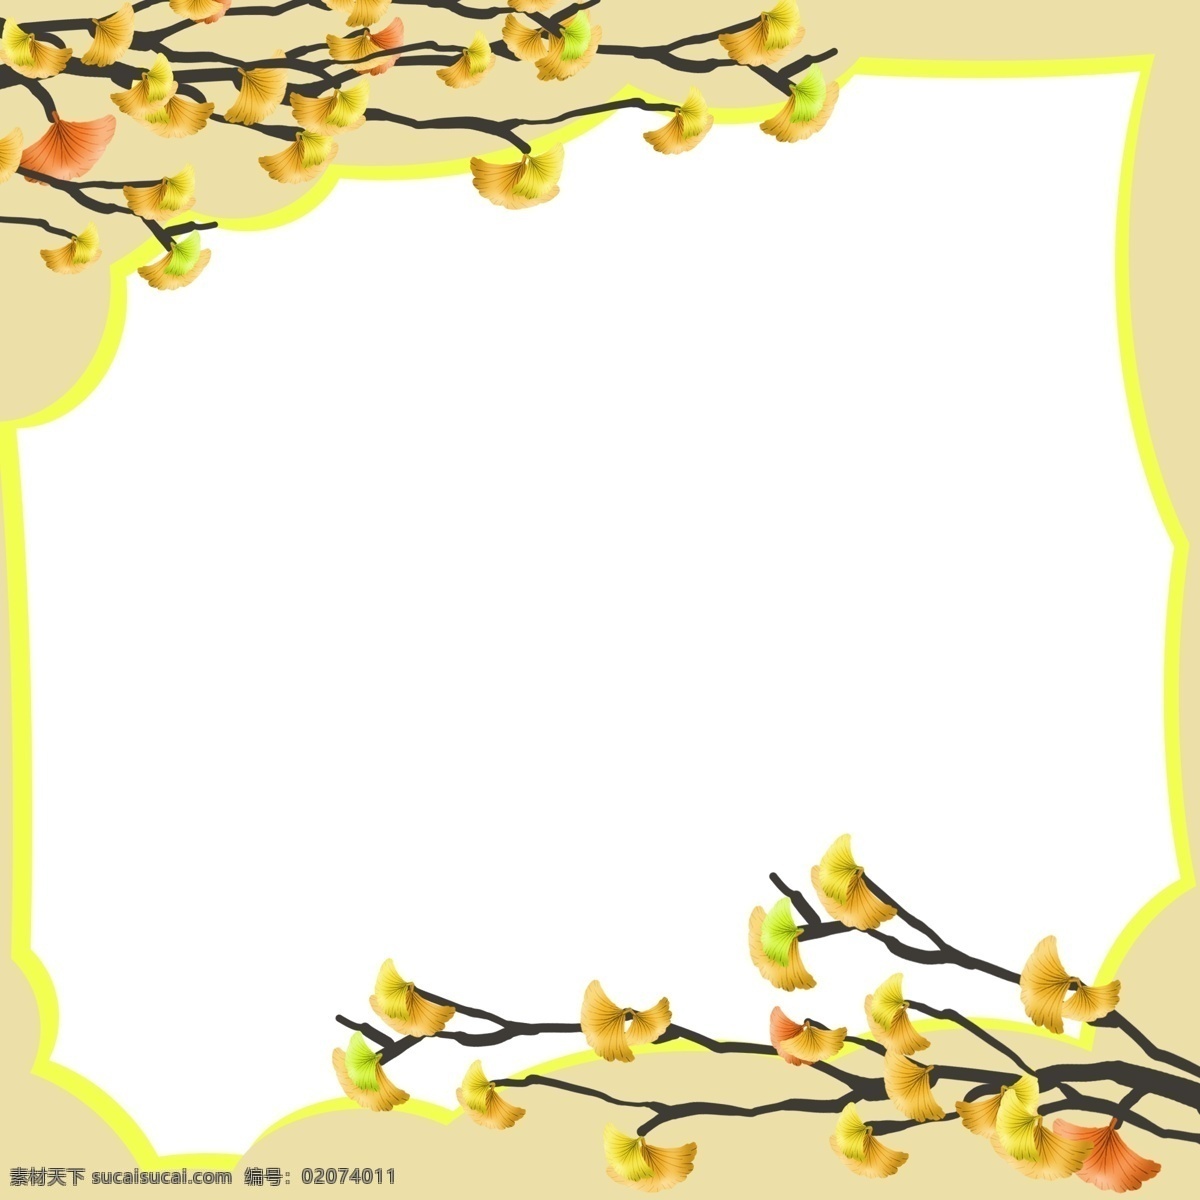 手绘 秋季 树枝 边框 漂亮的边框 美丽的边框 卡通边框 手绘秋季边框 创意的边框 秋季的树枝